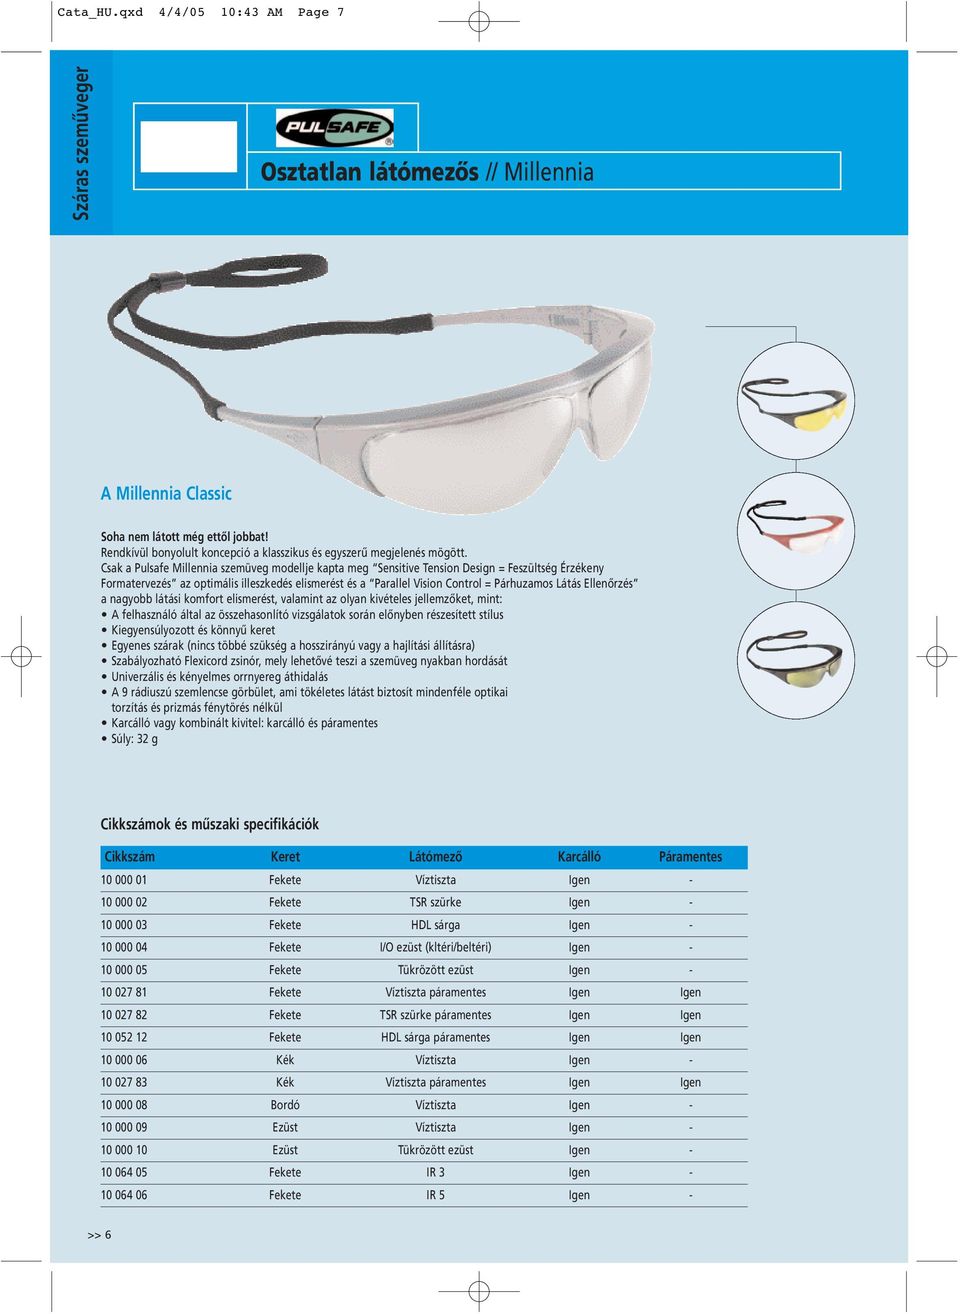 Csak a Pulsafe Millennia szemüveg modellje kapta meg Sensitive Tension Design = Feszültség Érzékeny Formatervezés az optimális illeszkedés elismerést és a Parallel Vision Control = Párhuzamos Látás